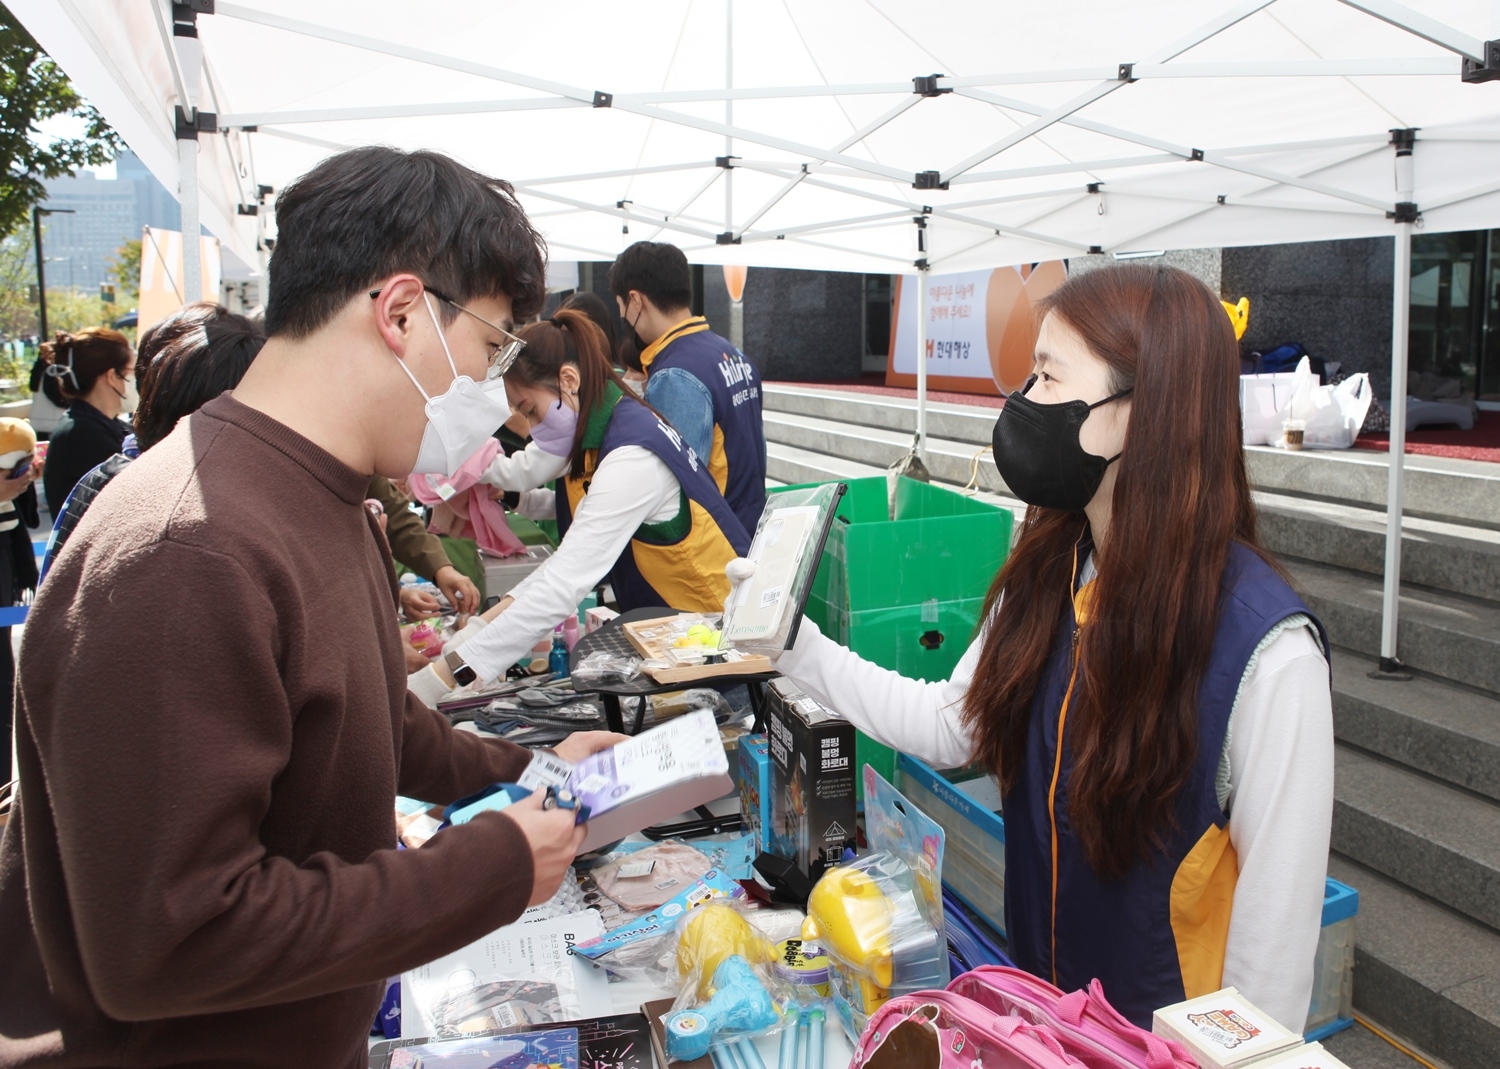 현대해상은 지난 12일 서울 광화문 본사 앞에서 ‘사랑나눔장터’를 개최했다. 서포터즈로 나선 현대해상직원들이 임직원과 하이플래너가 기증한 물품을 판매하고 있다./사진=현대해상